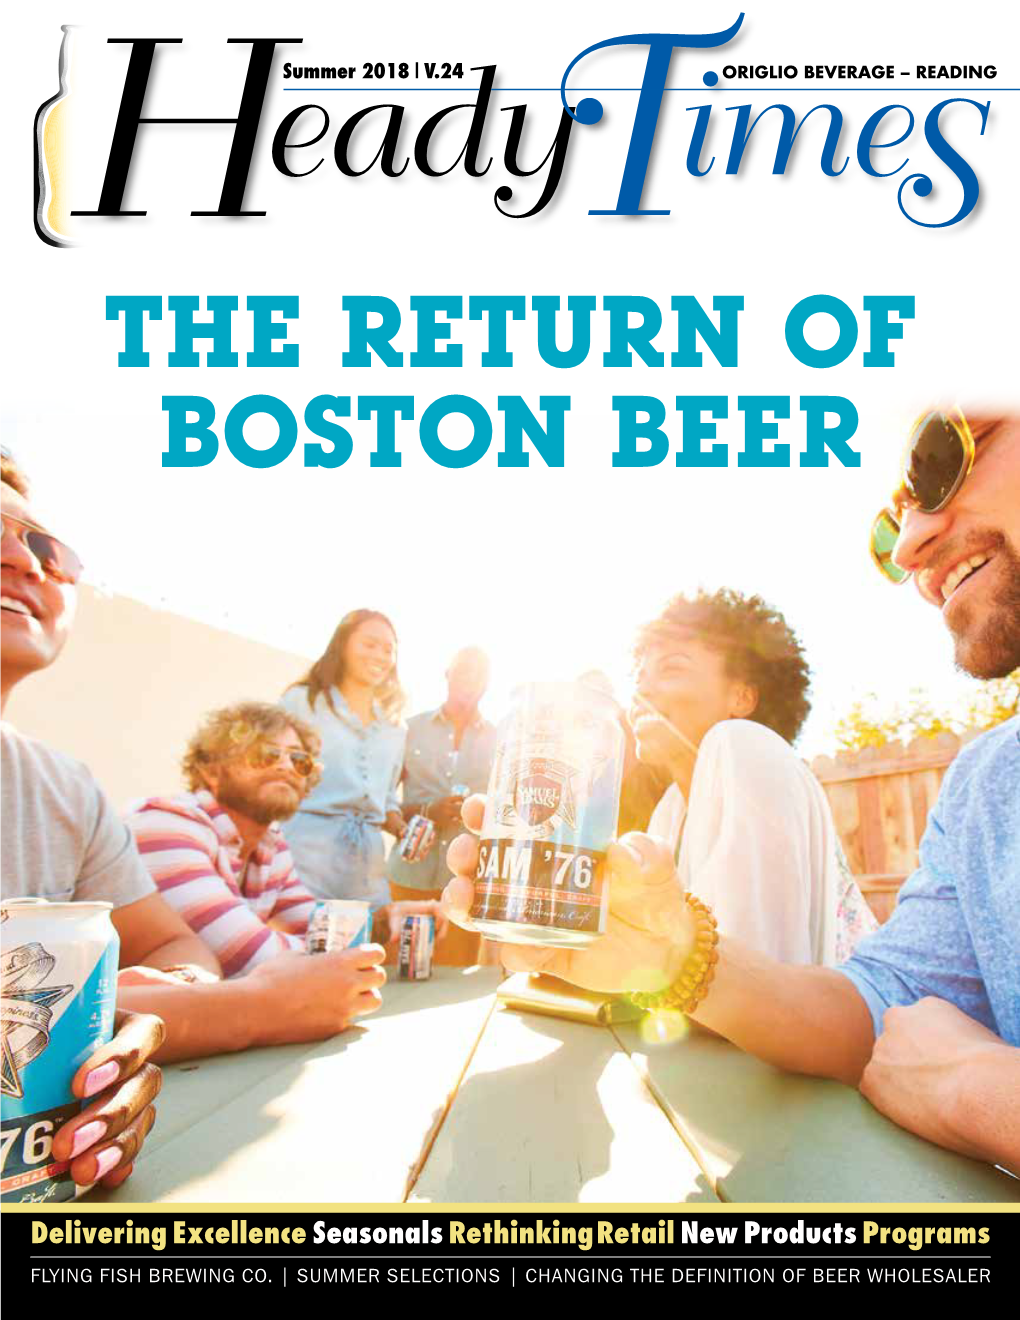 The Return of Boston Beer